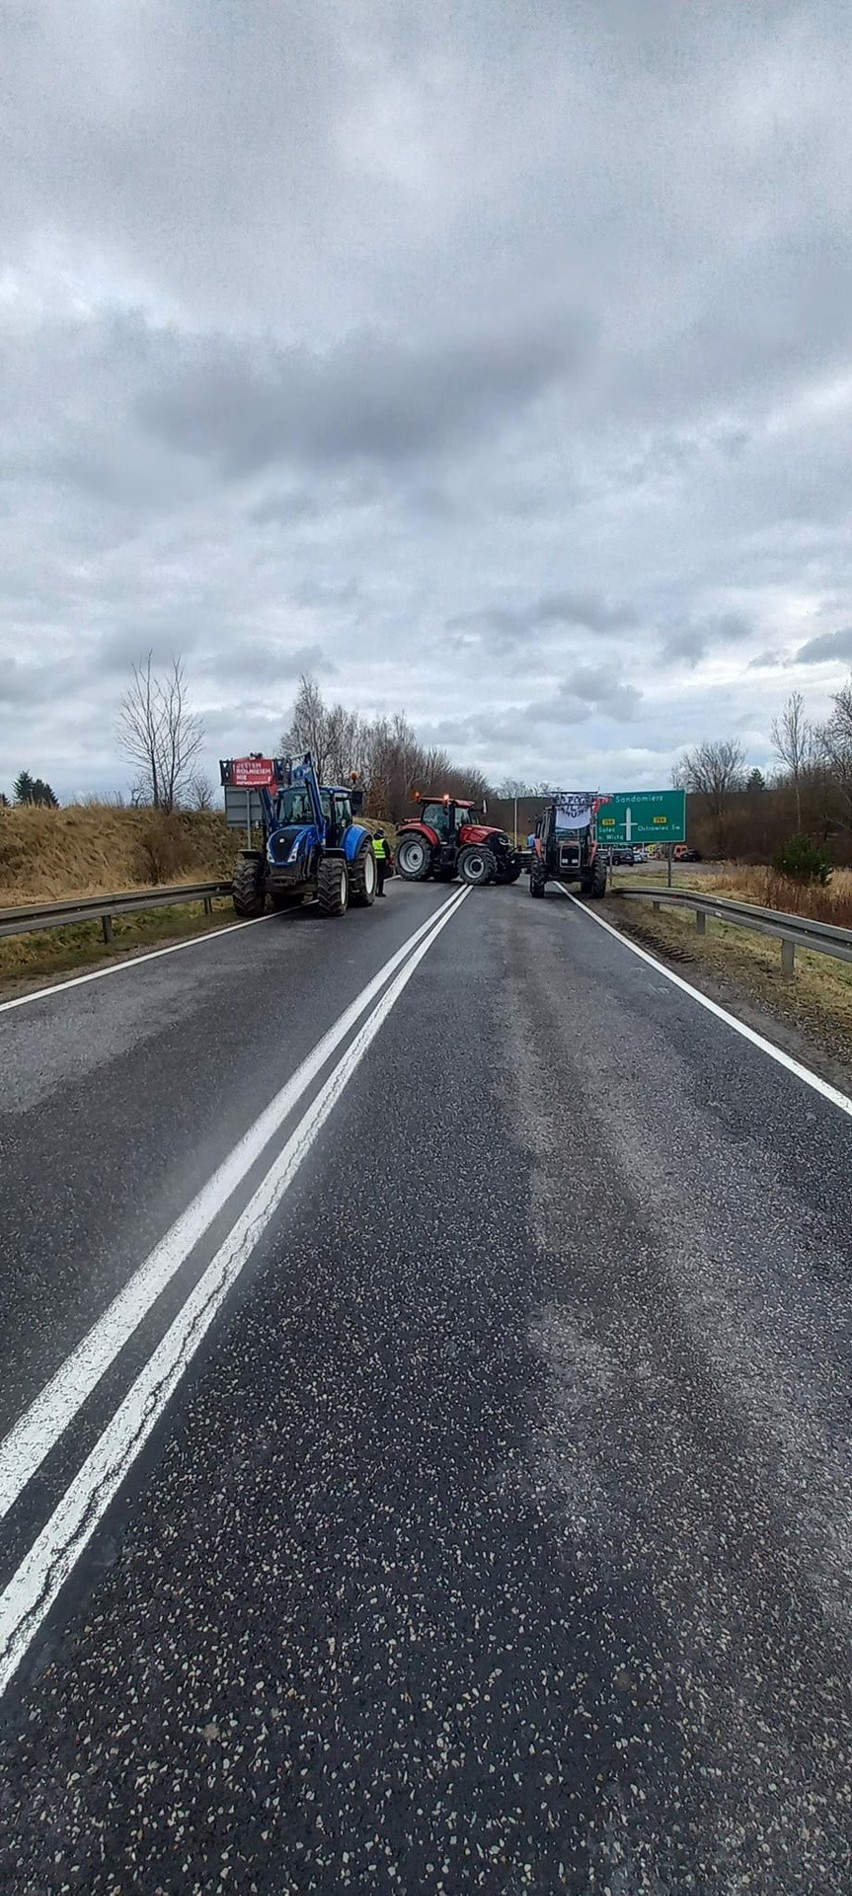 Rolnicy protestowali w Czekarzewicach w powiecie opatowskim. Zablokowana była droga numer 79